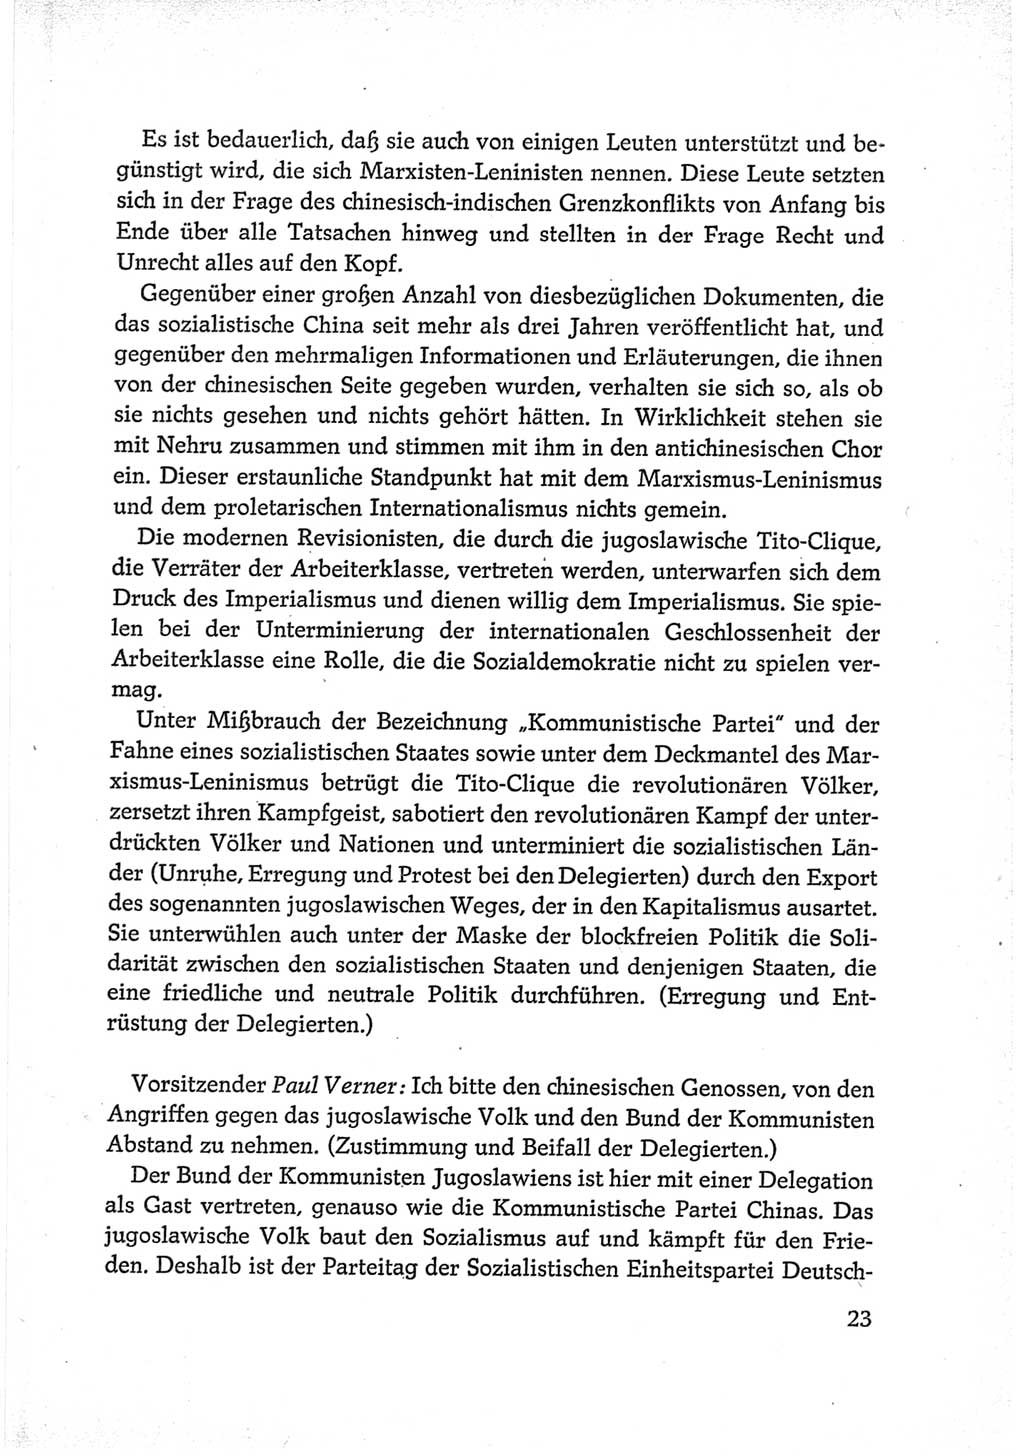 Protokoll der Verhandlungen des Ⅵ. Parteitages der Sozialistischen Einheitspartei Deutschlands (SED) [Deutsche Demokratische Republik (DDR)] 1963, Band Ⅱ, Seite 23 (Prot. Verh. Ⅵ. PT SED DDR 1963, Bd. Ⅱ, S. 23)